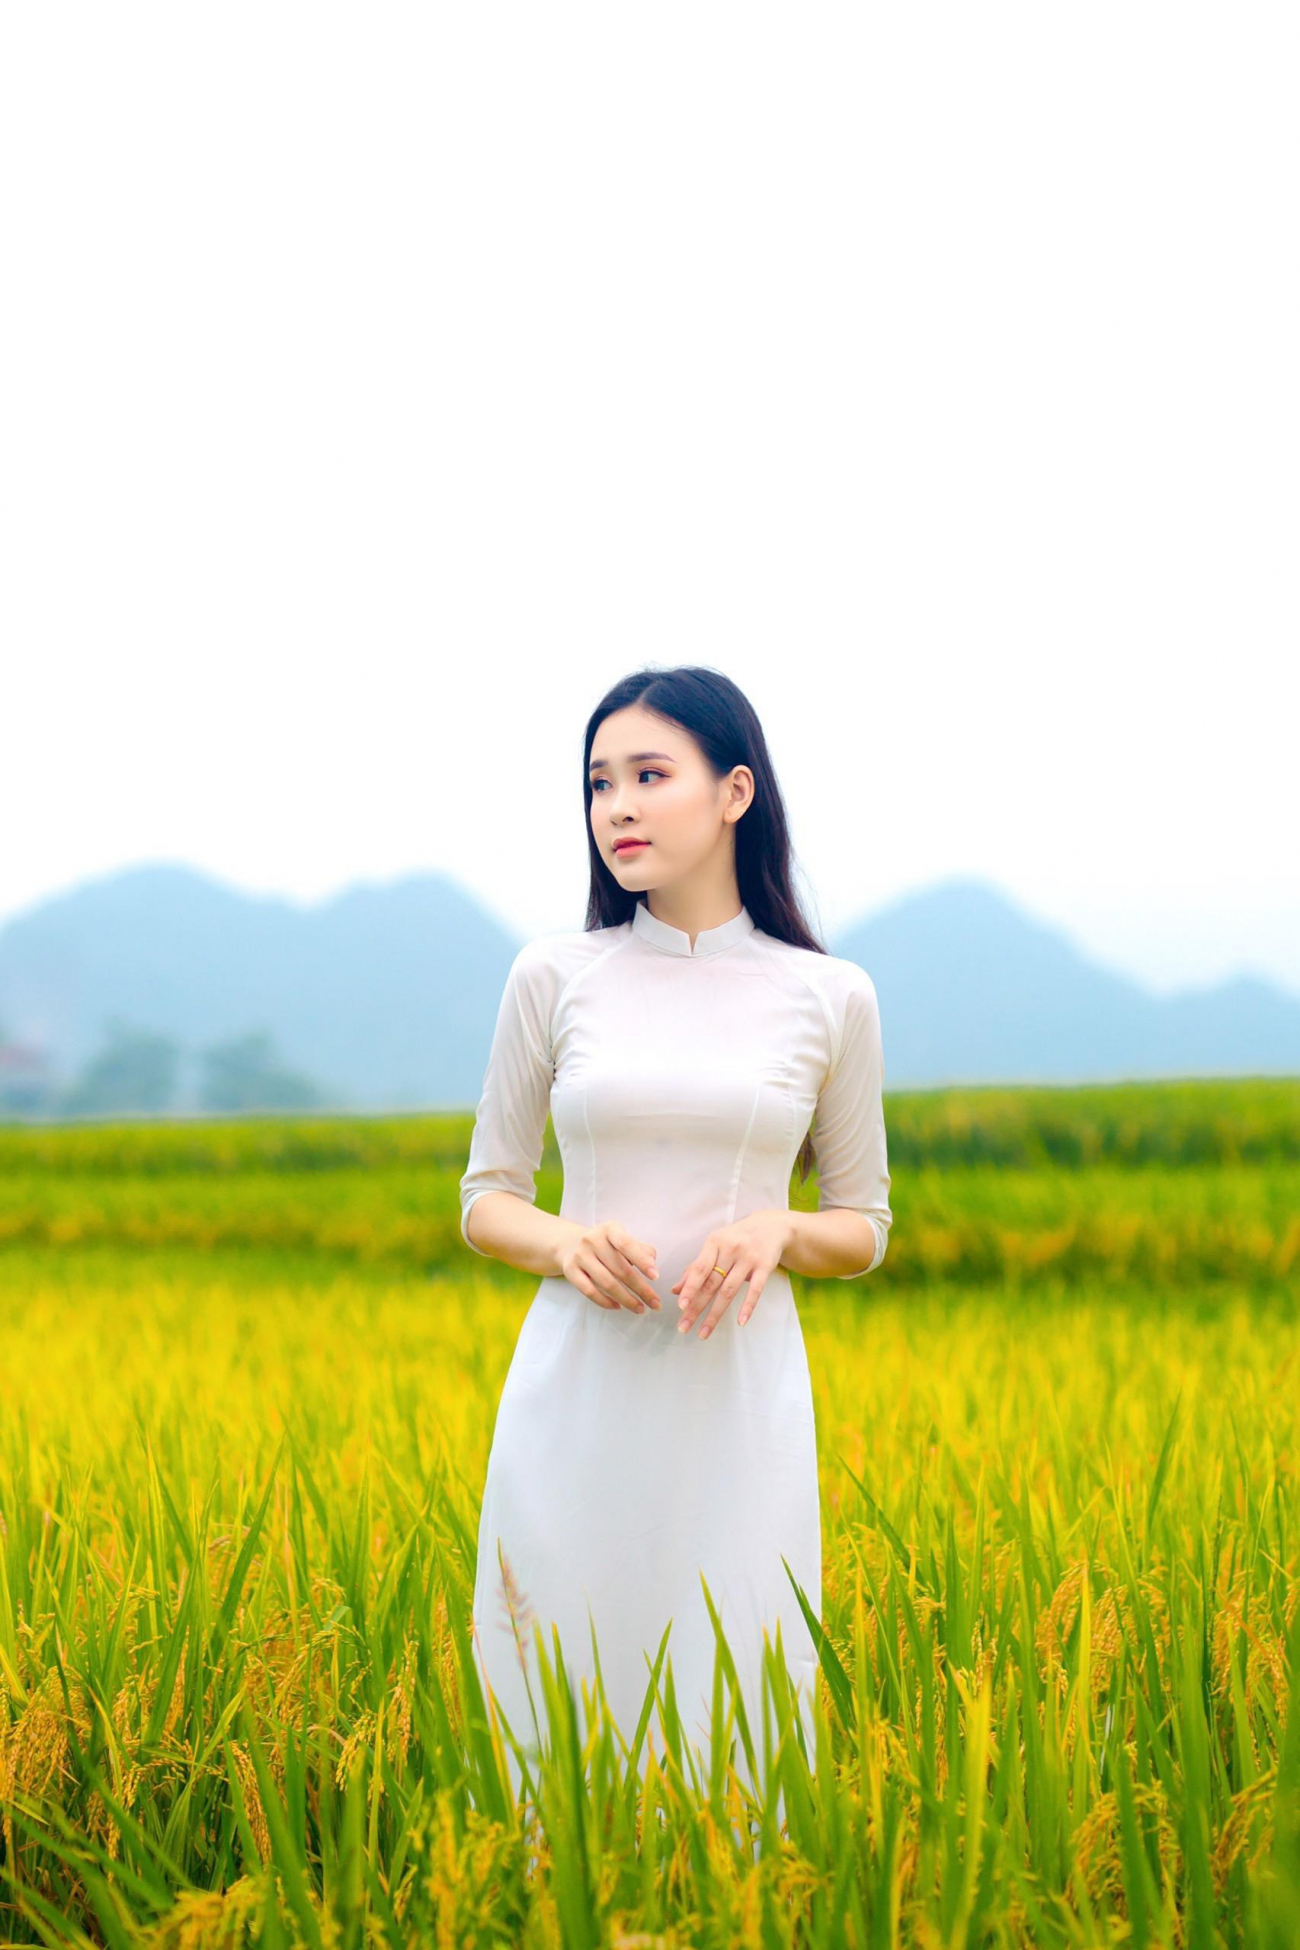 Hoa khôi sinh viên nghệ an từng thi hhvn 2020 khoe nhan sắc ngọt ngào với áo dài trắng - 3